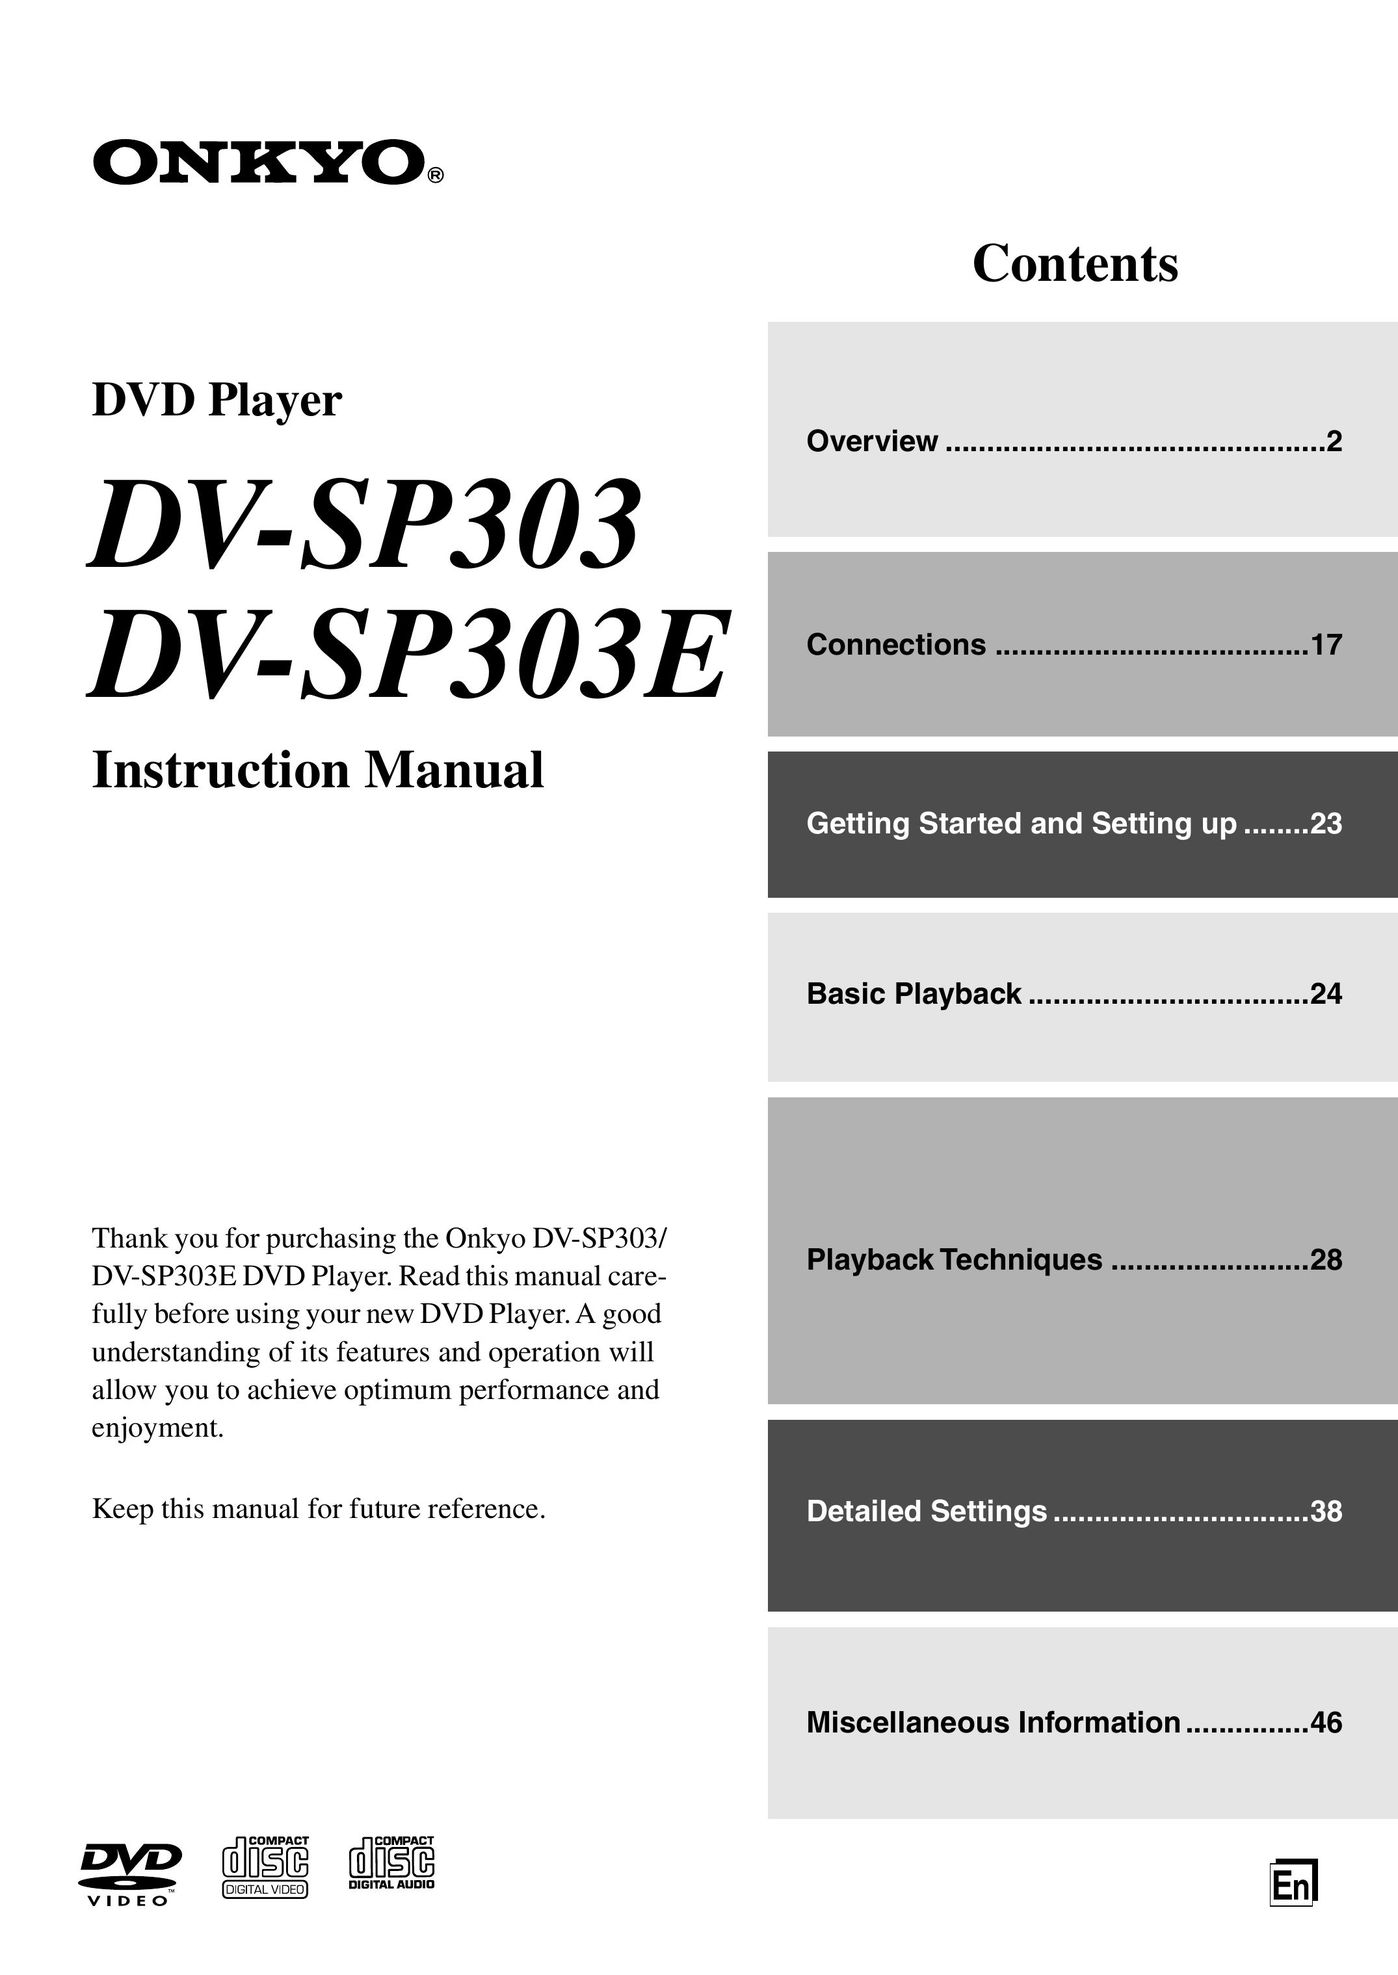 Onkyo DV-SP303E DVD Player User Manual